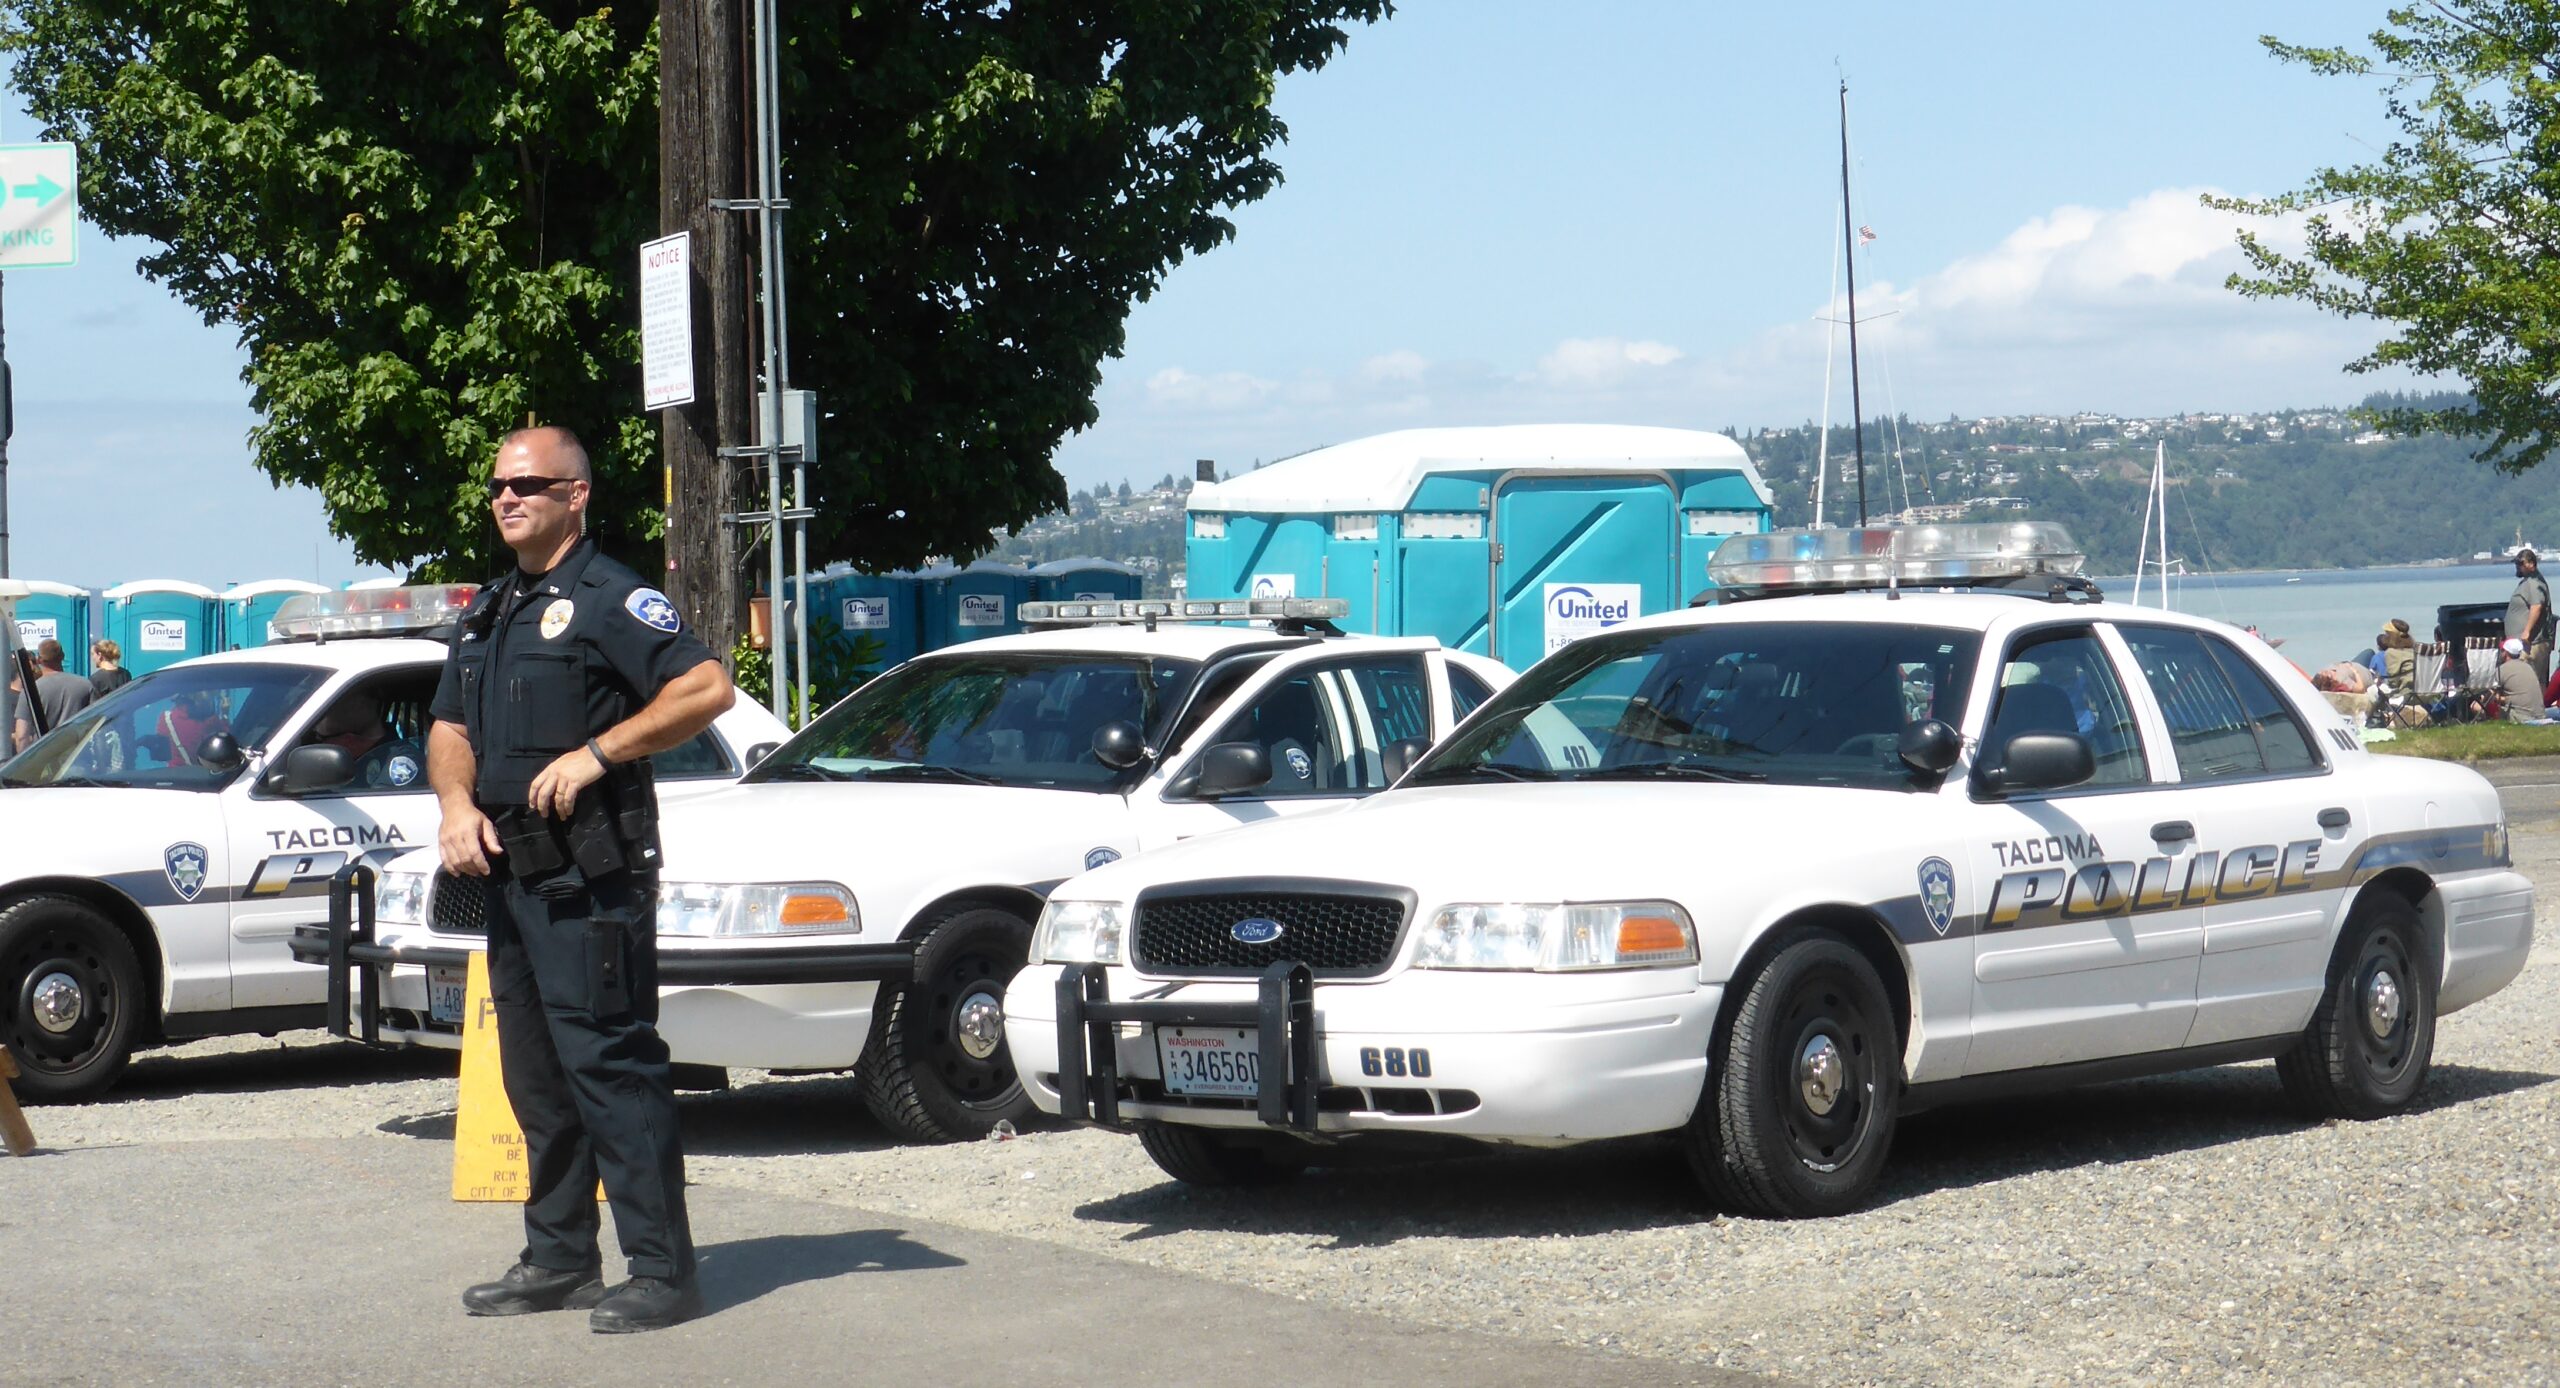 Police in Tacoma